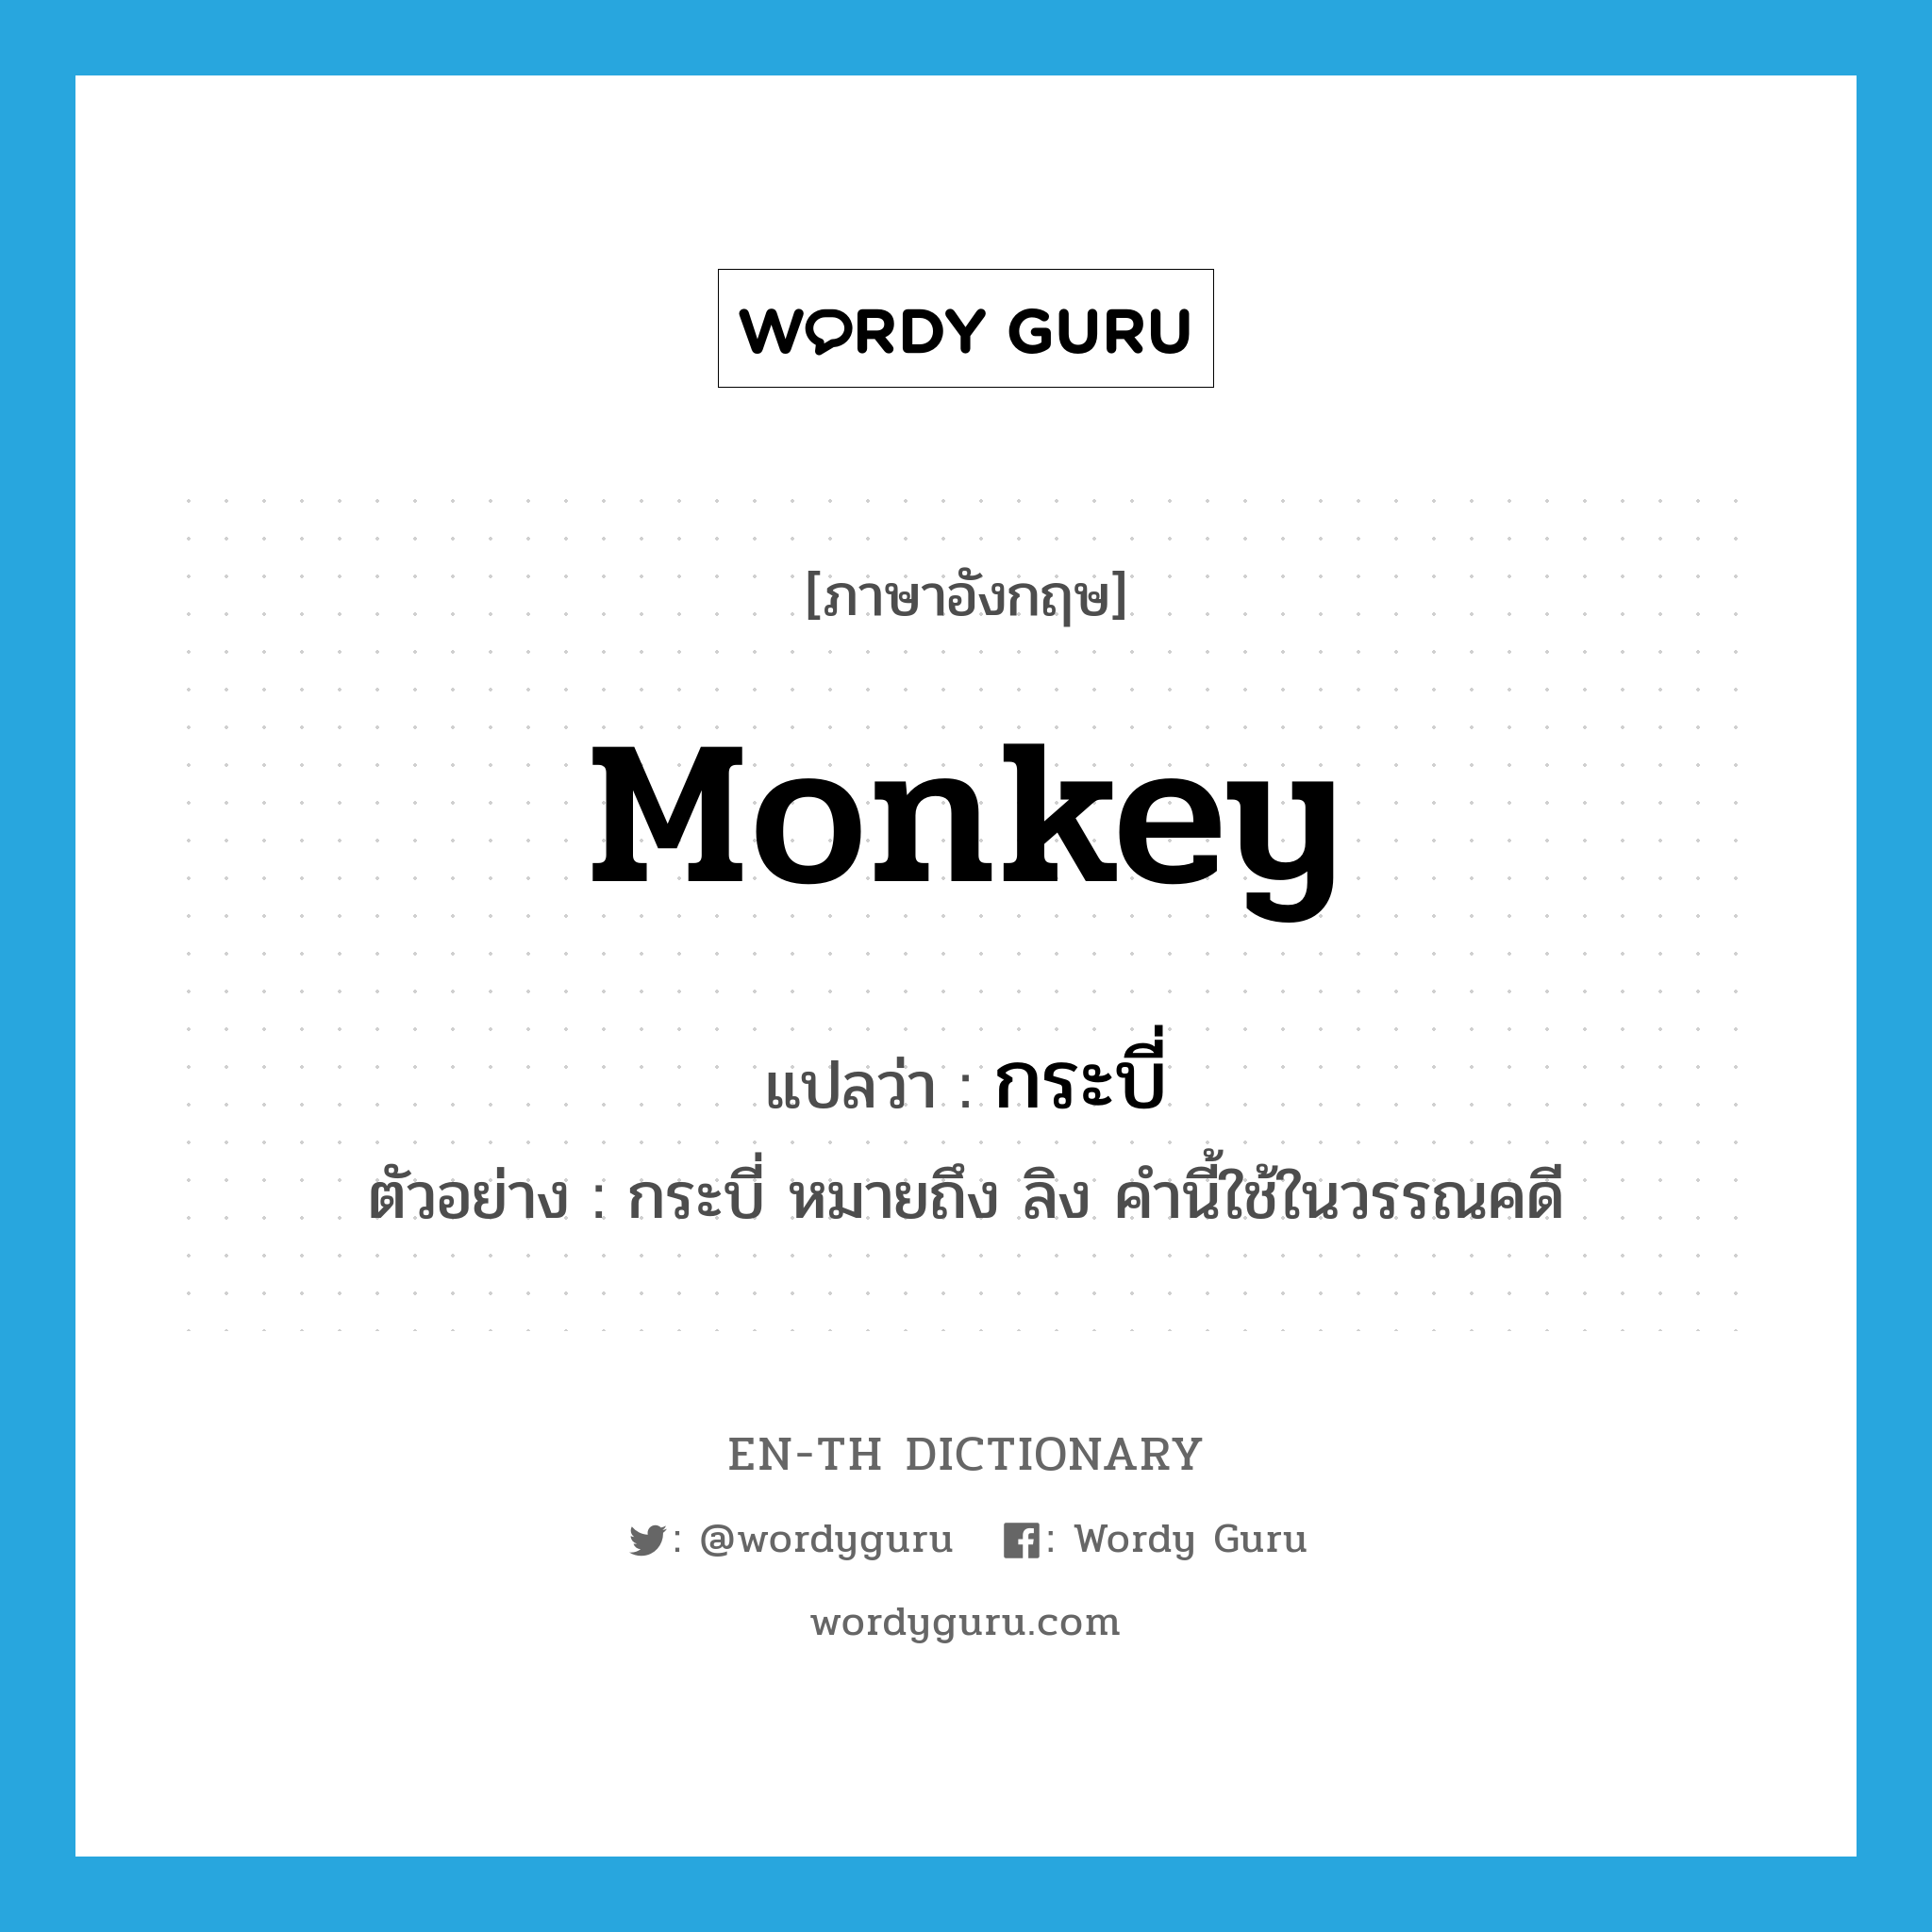 กระบี่ ภาษาอังกฤษ?, คำศัพท์ภาษาอังกฤษ กระบี่ แปลว่า monkey ประเภท N ตัวอย่าง กระบี่ หมายถึง ลิง คำนี้ใช้ในวรรณคดี หมวด N